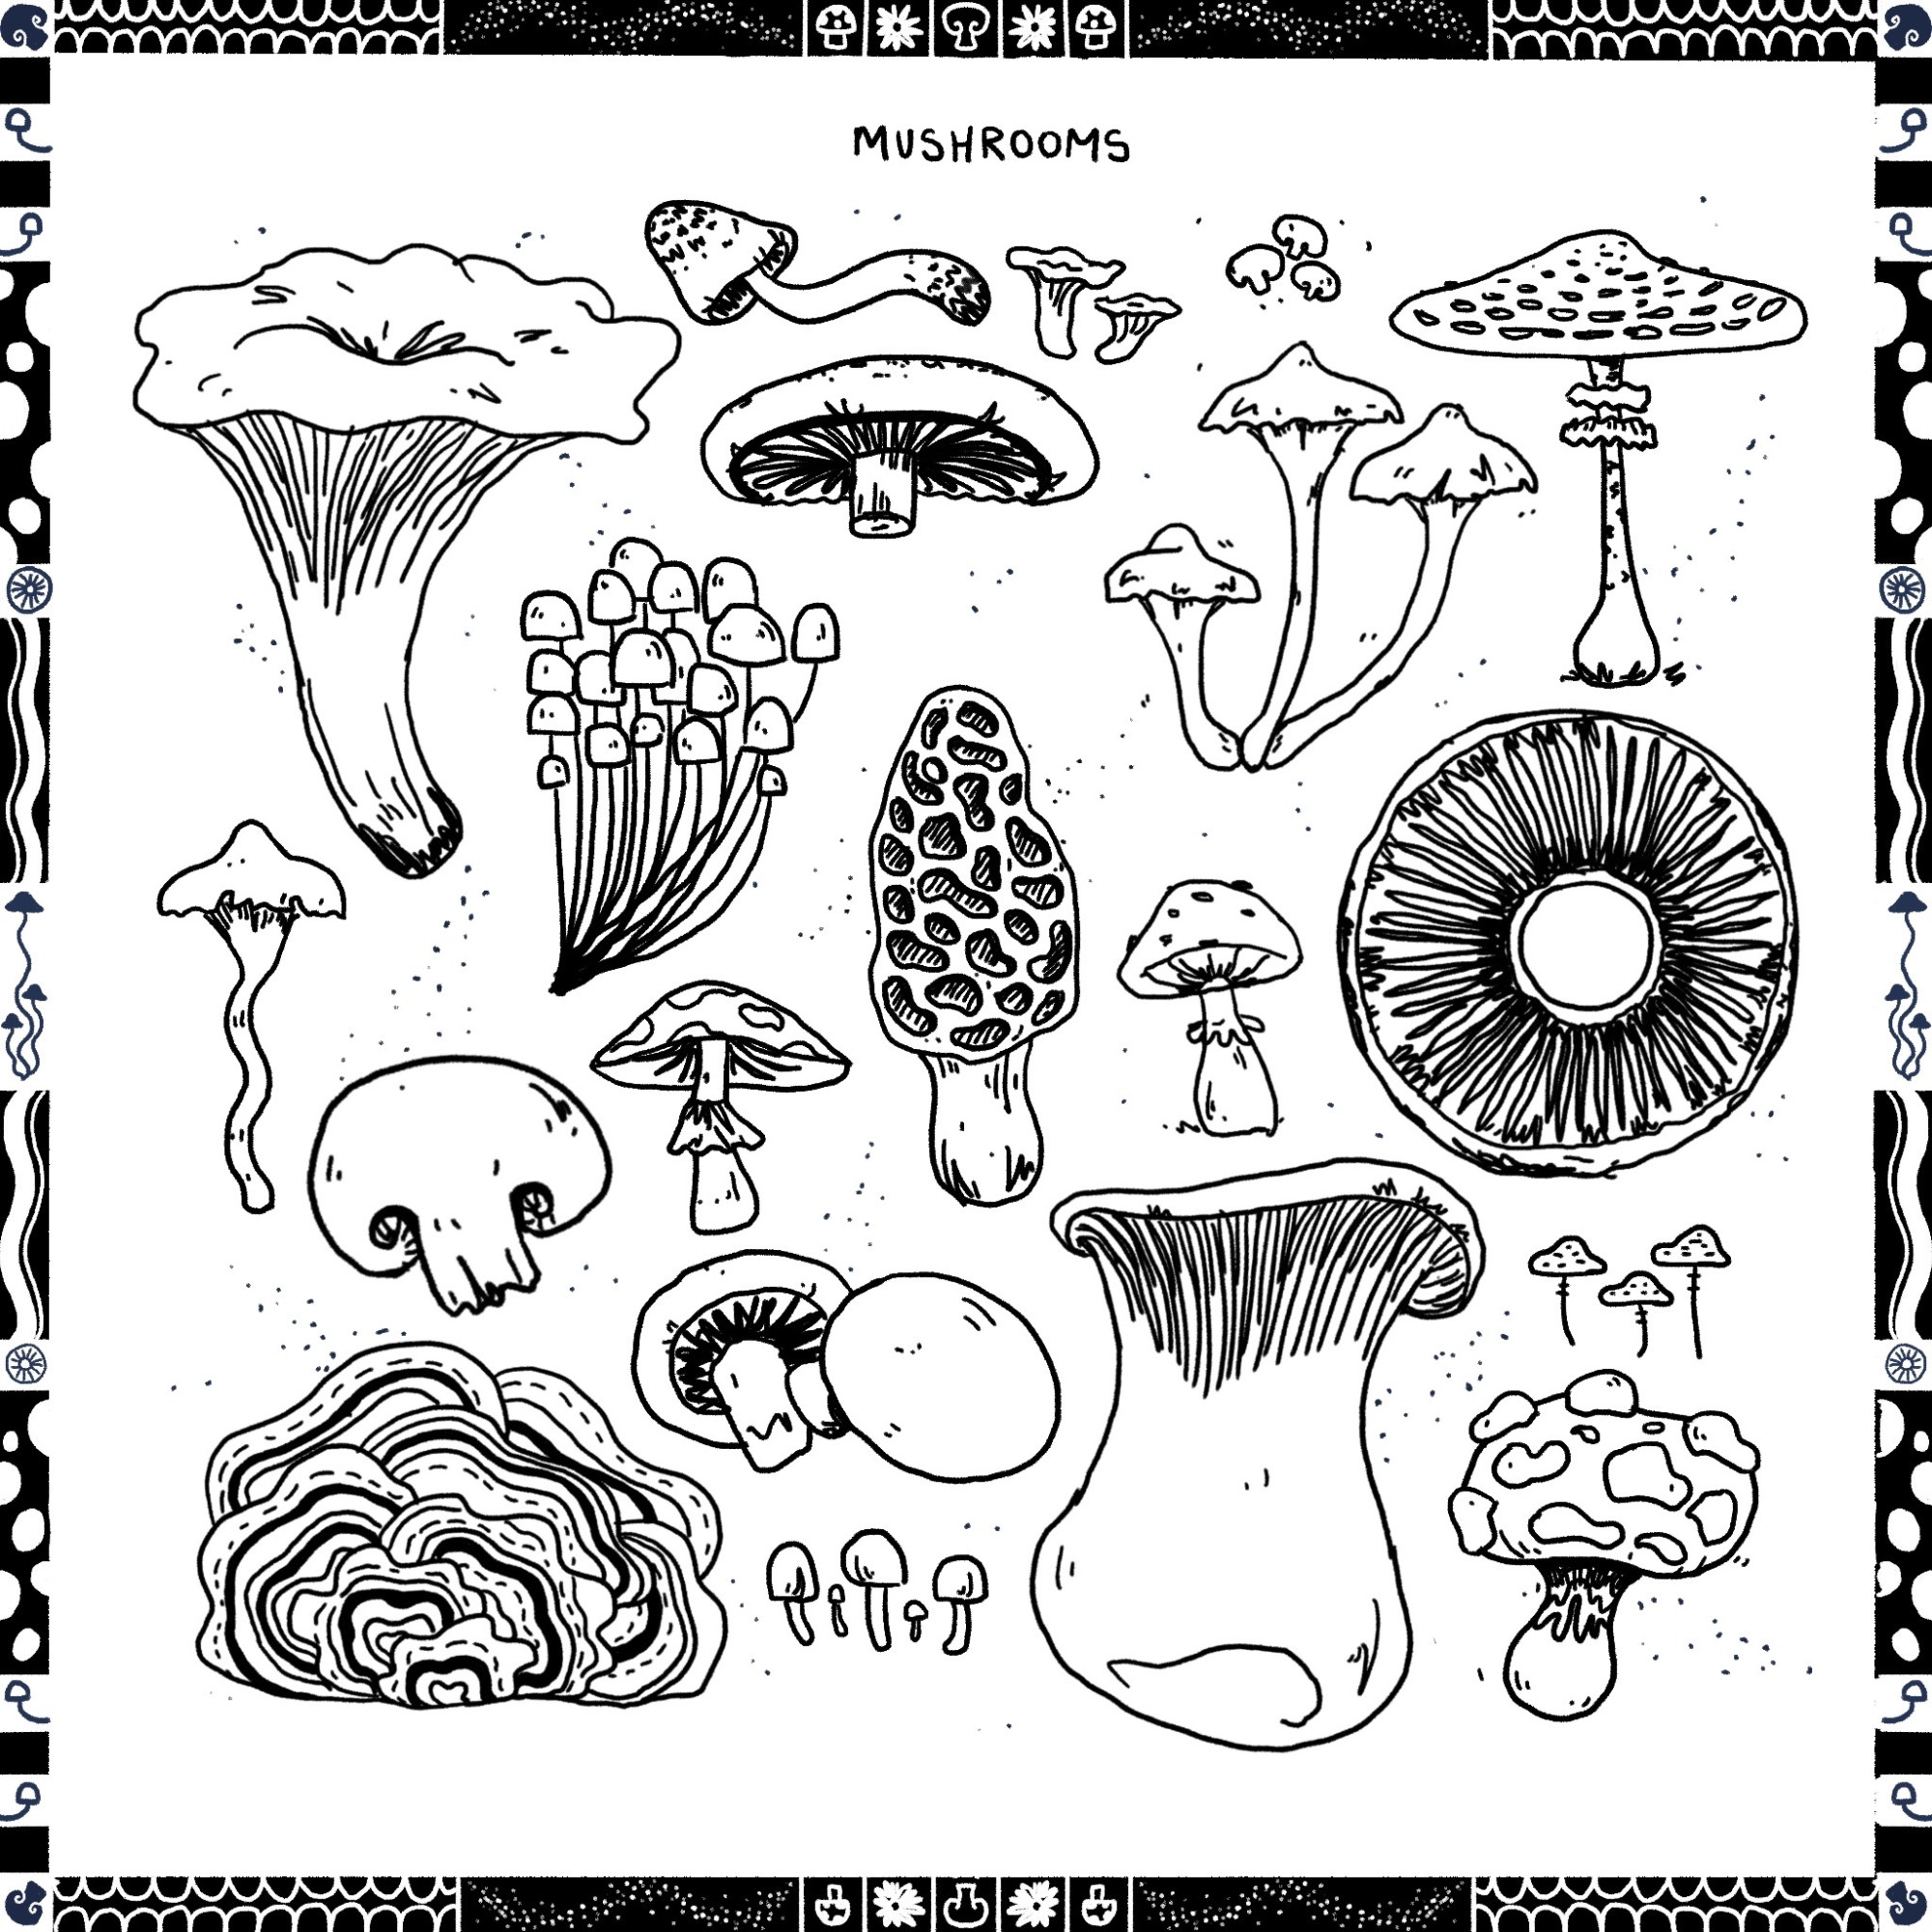 Mushroom Tattoo Flash Sheet.